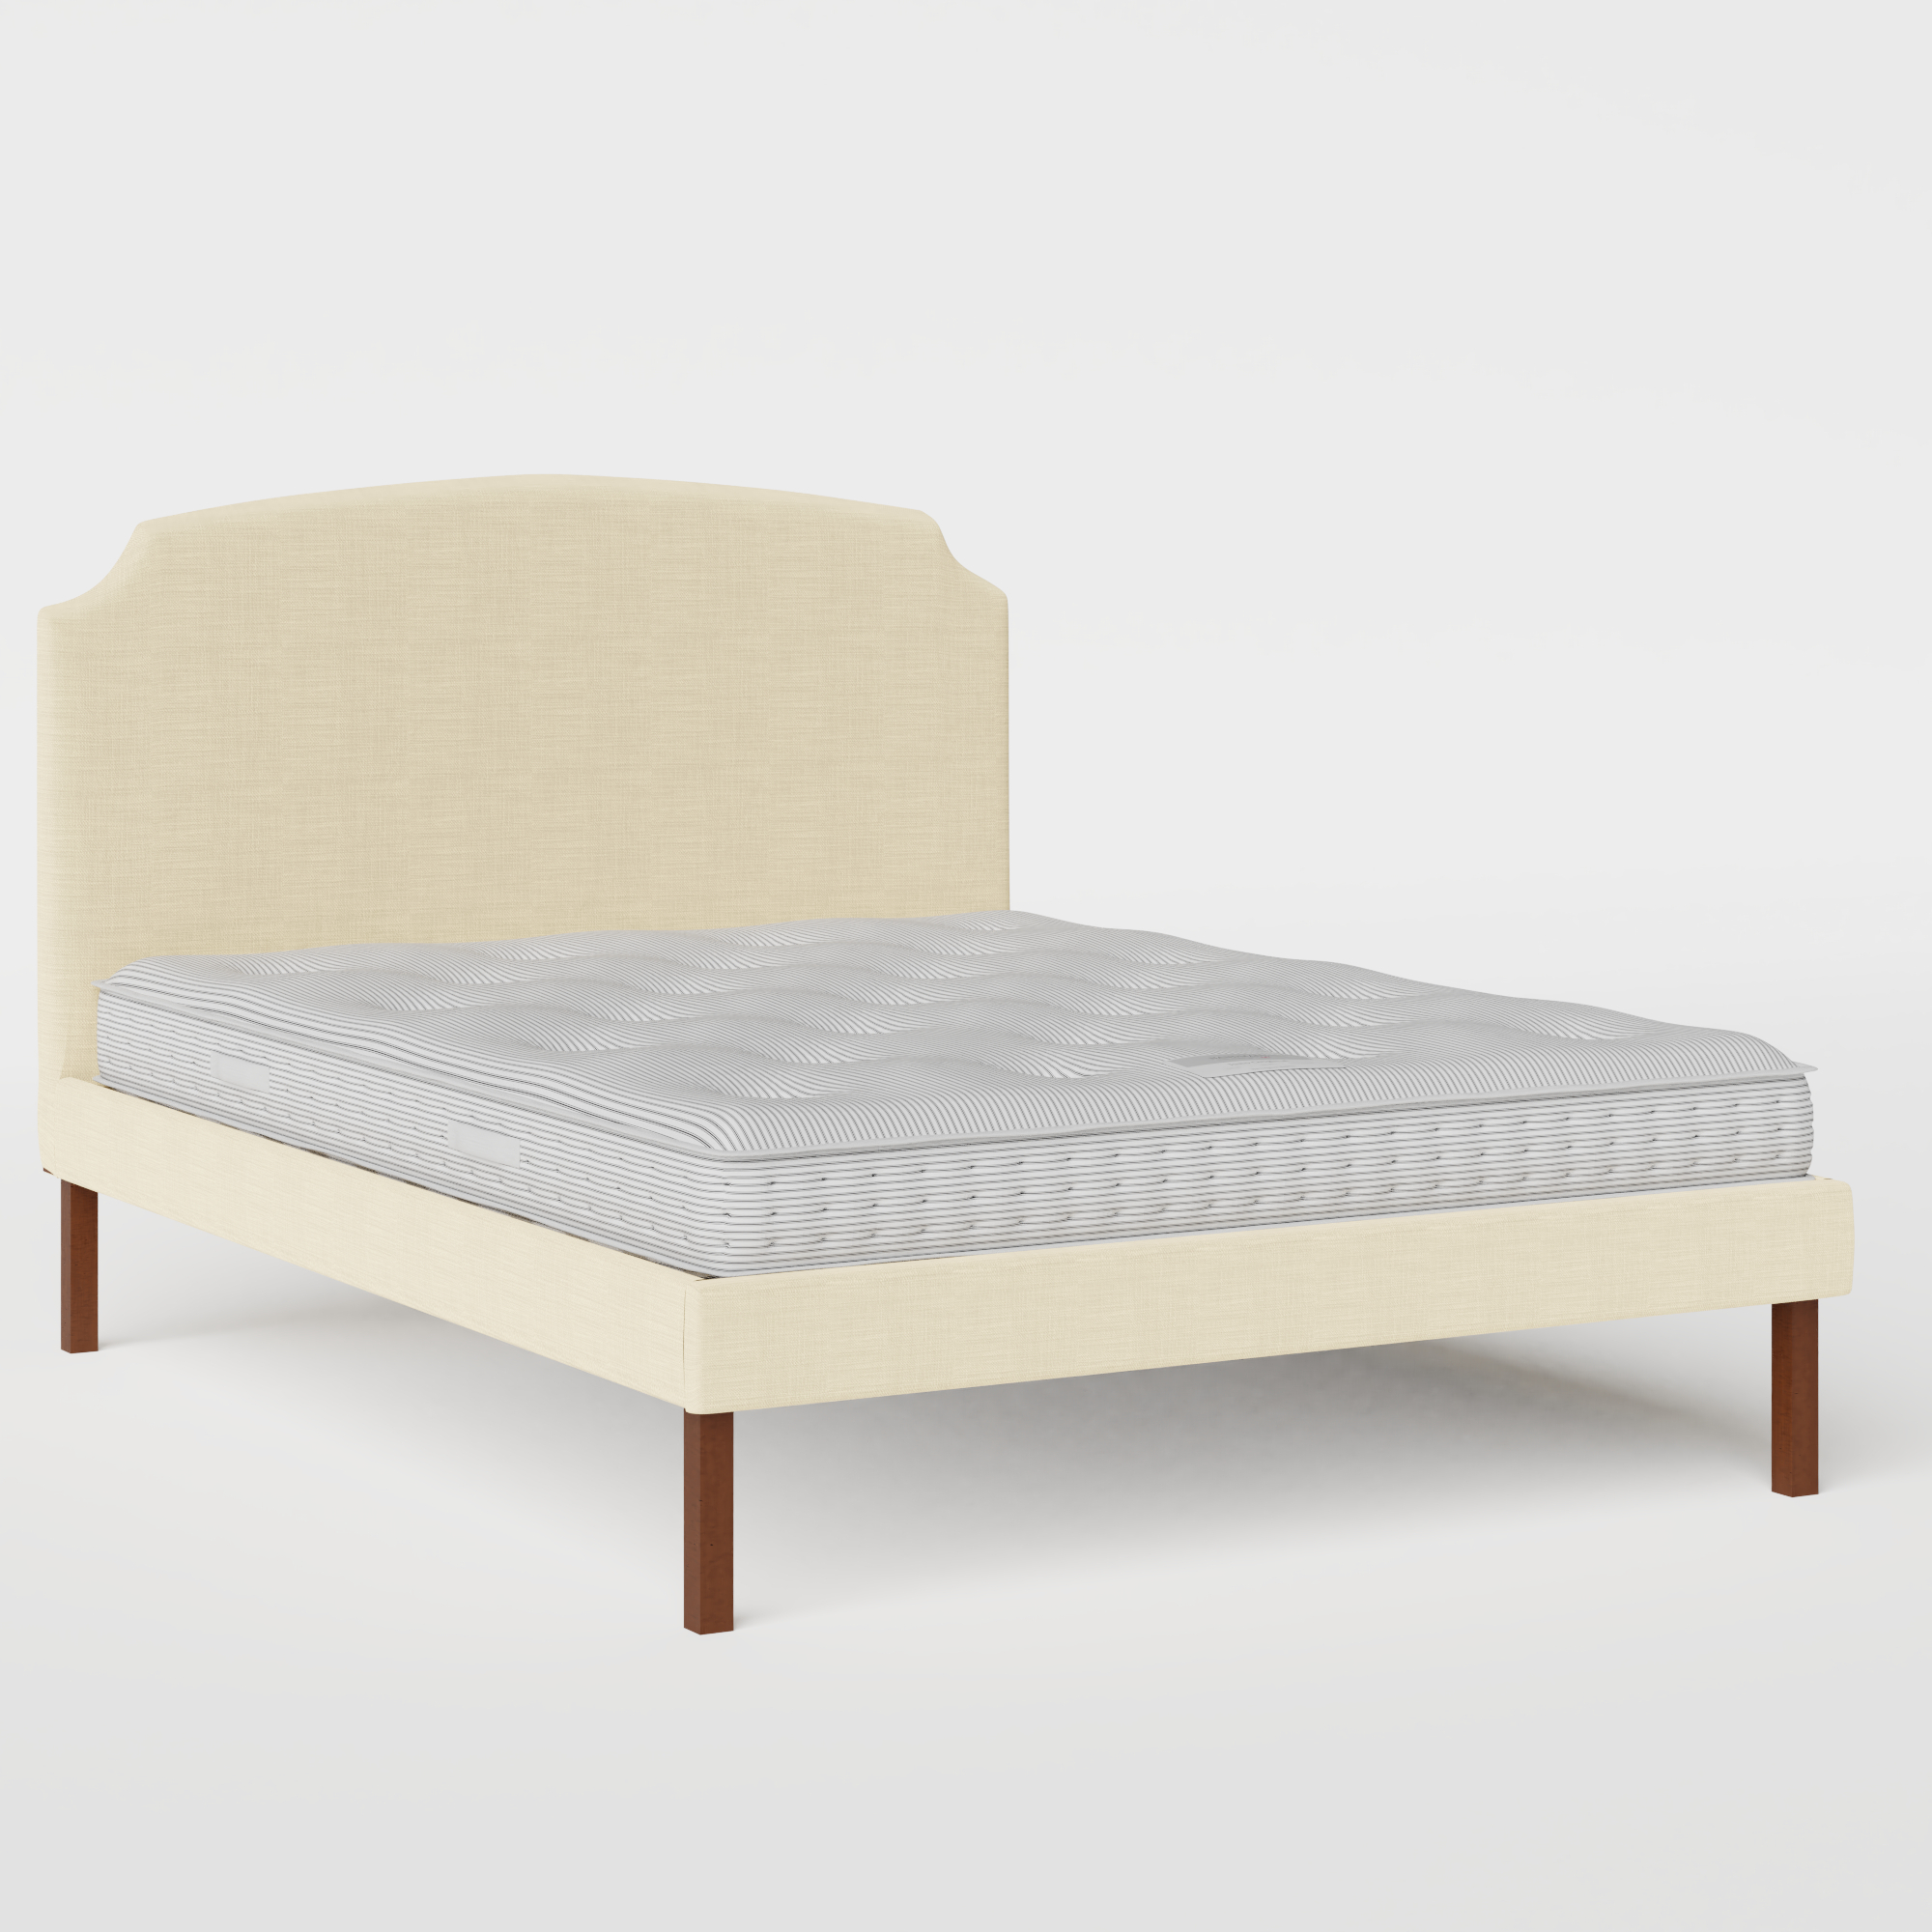 Kobe Upholstered cama tapizada en tela natural